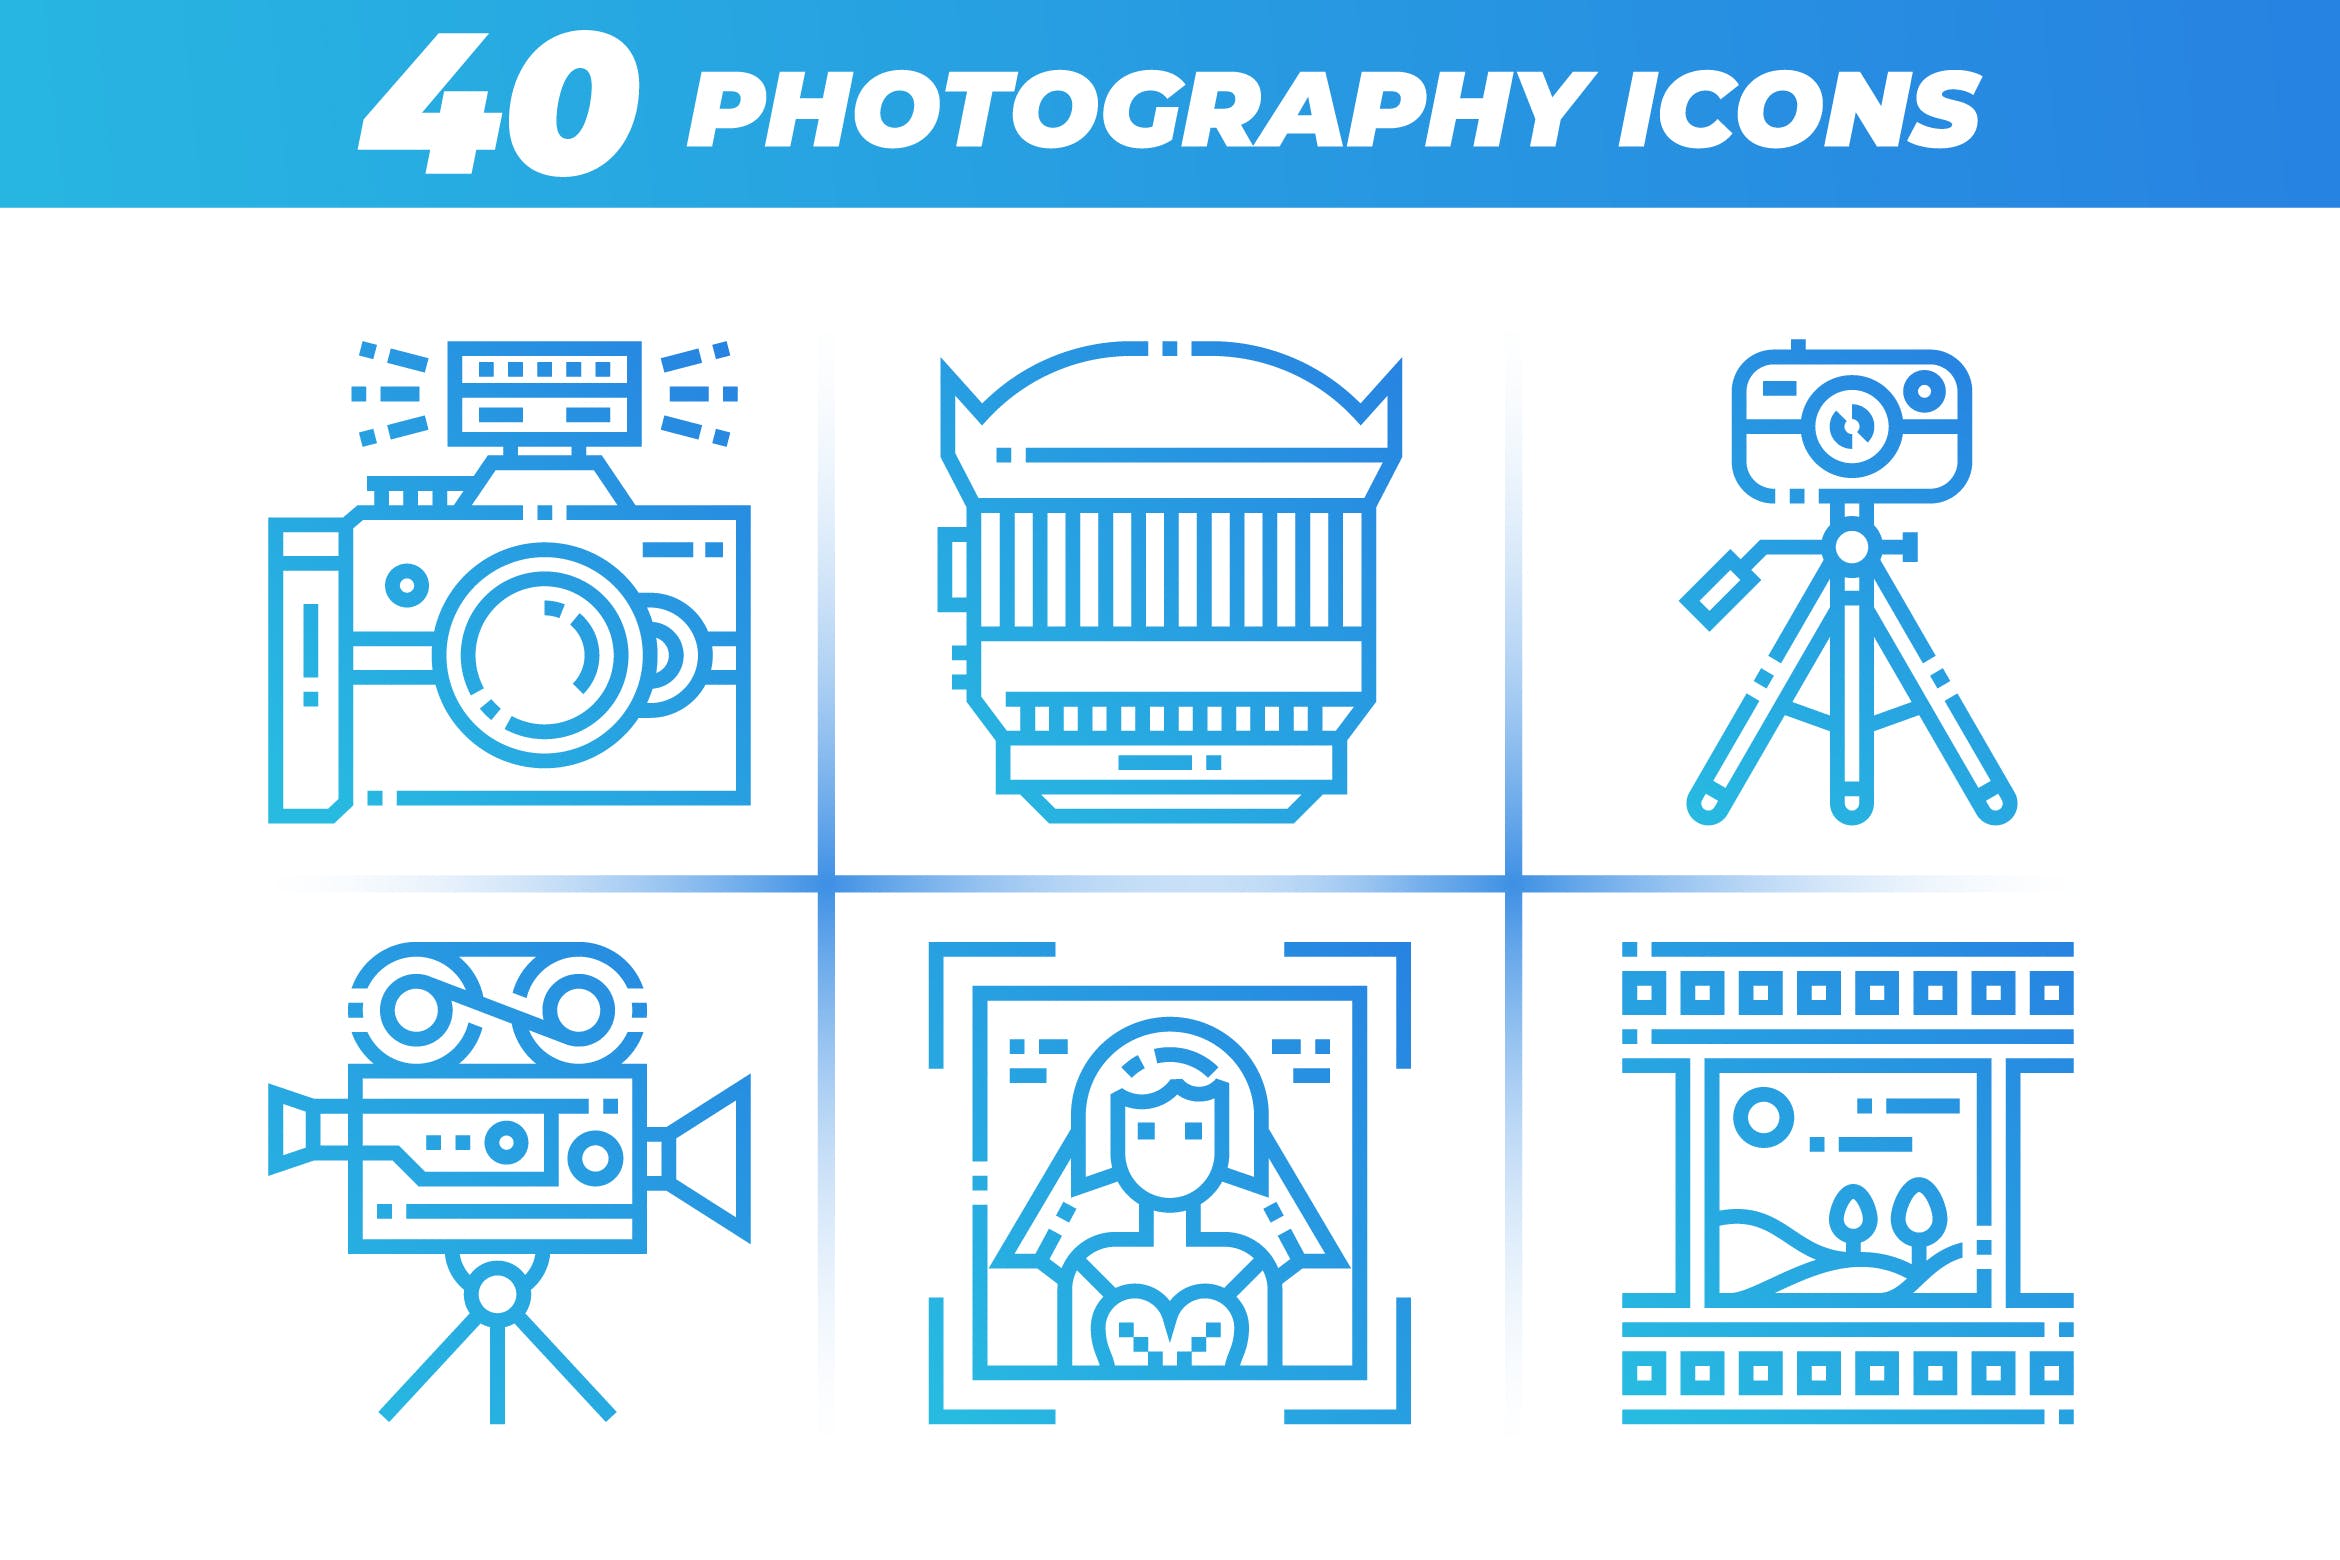 40枚摄像摄影主题矢量线性素材库精选图标 40 Photography Icons插图